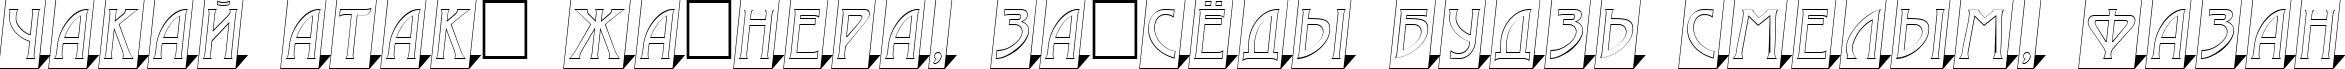 Пример написания шрифтом a_ModernoCmOtl3DSh текста на белорусском